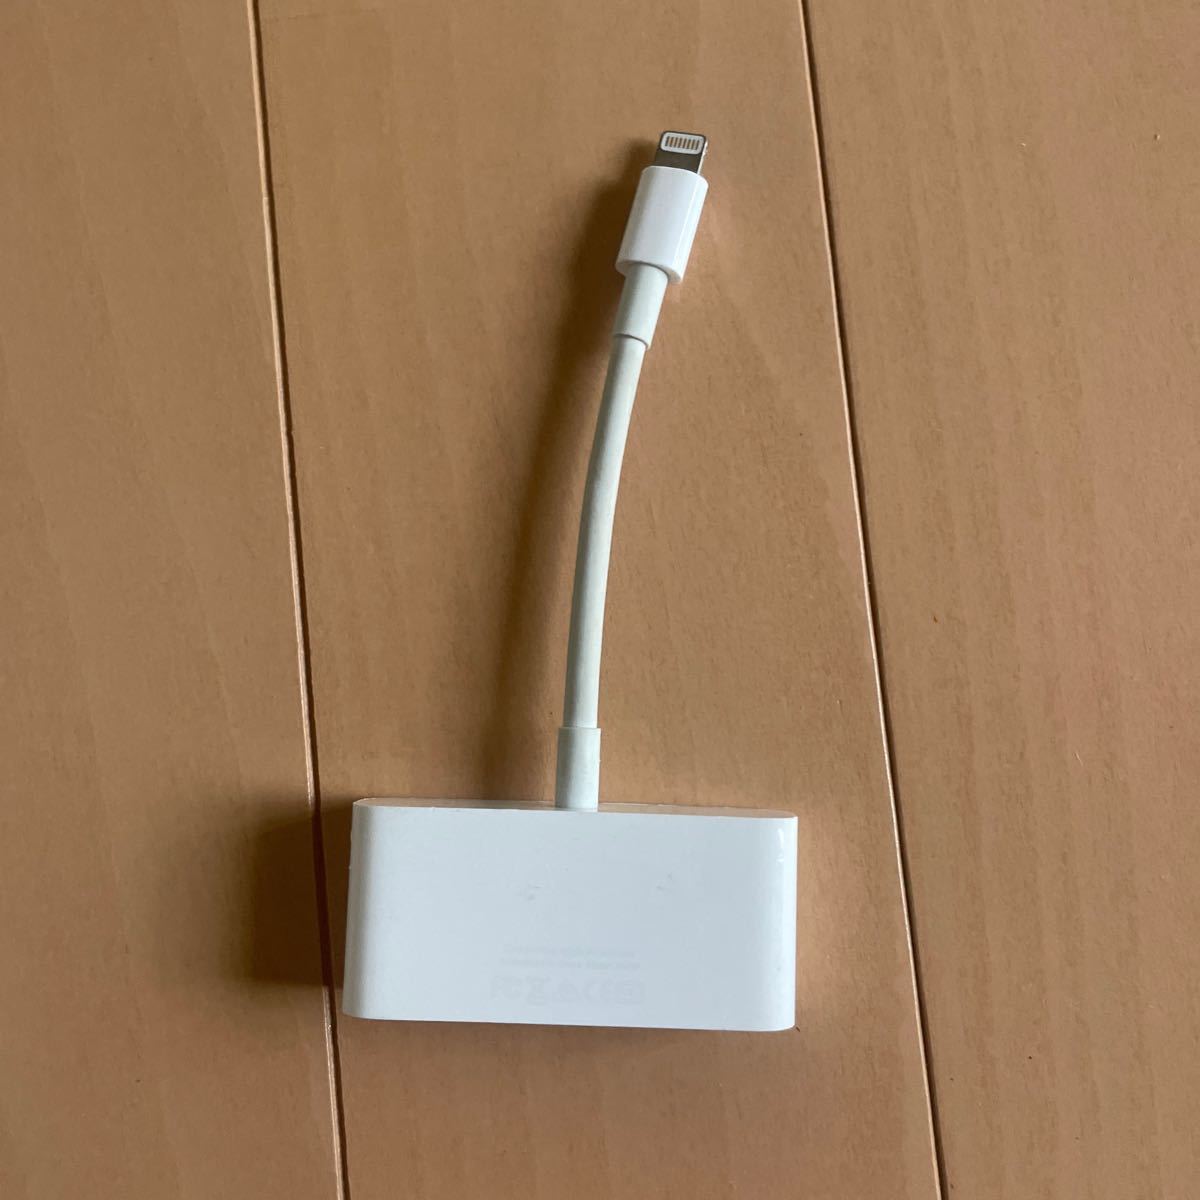 Apple Lightning - VGAアダプタ iPhone